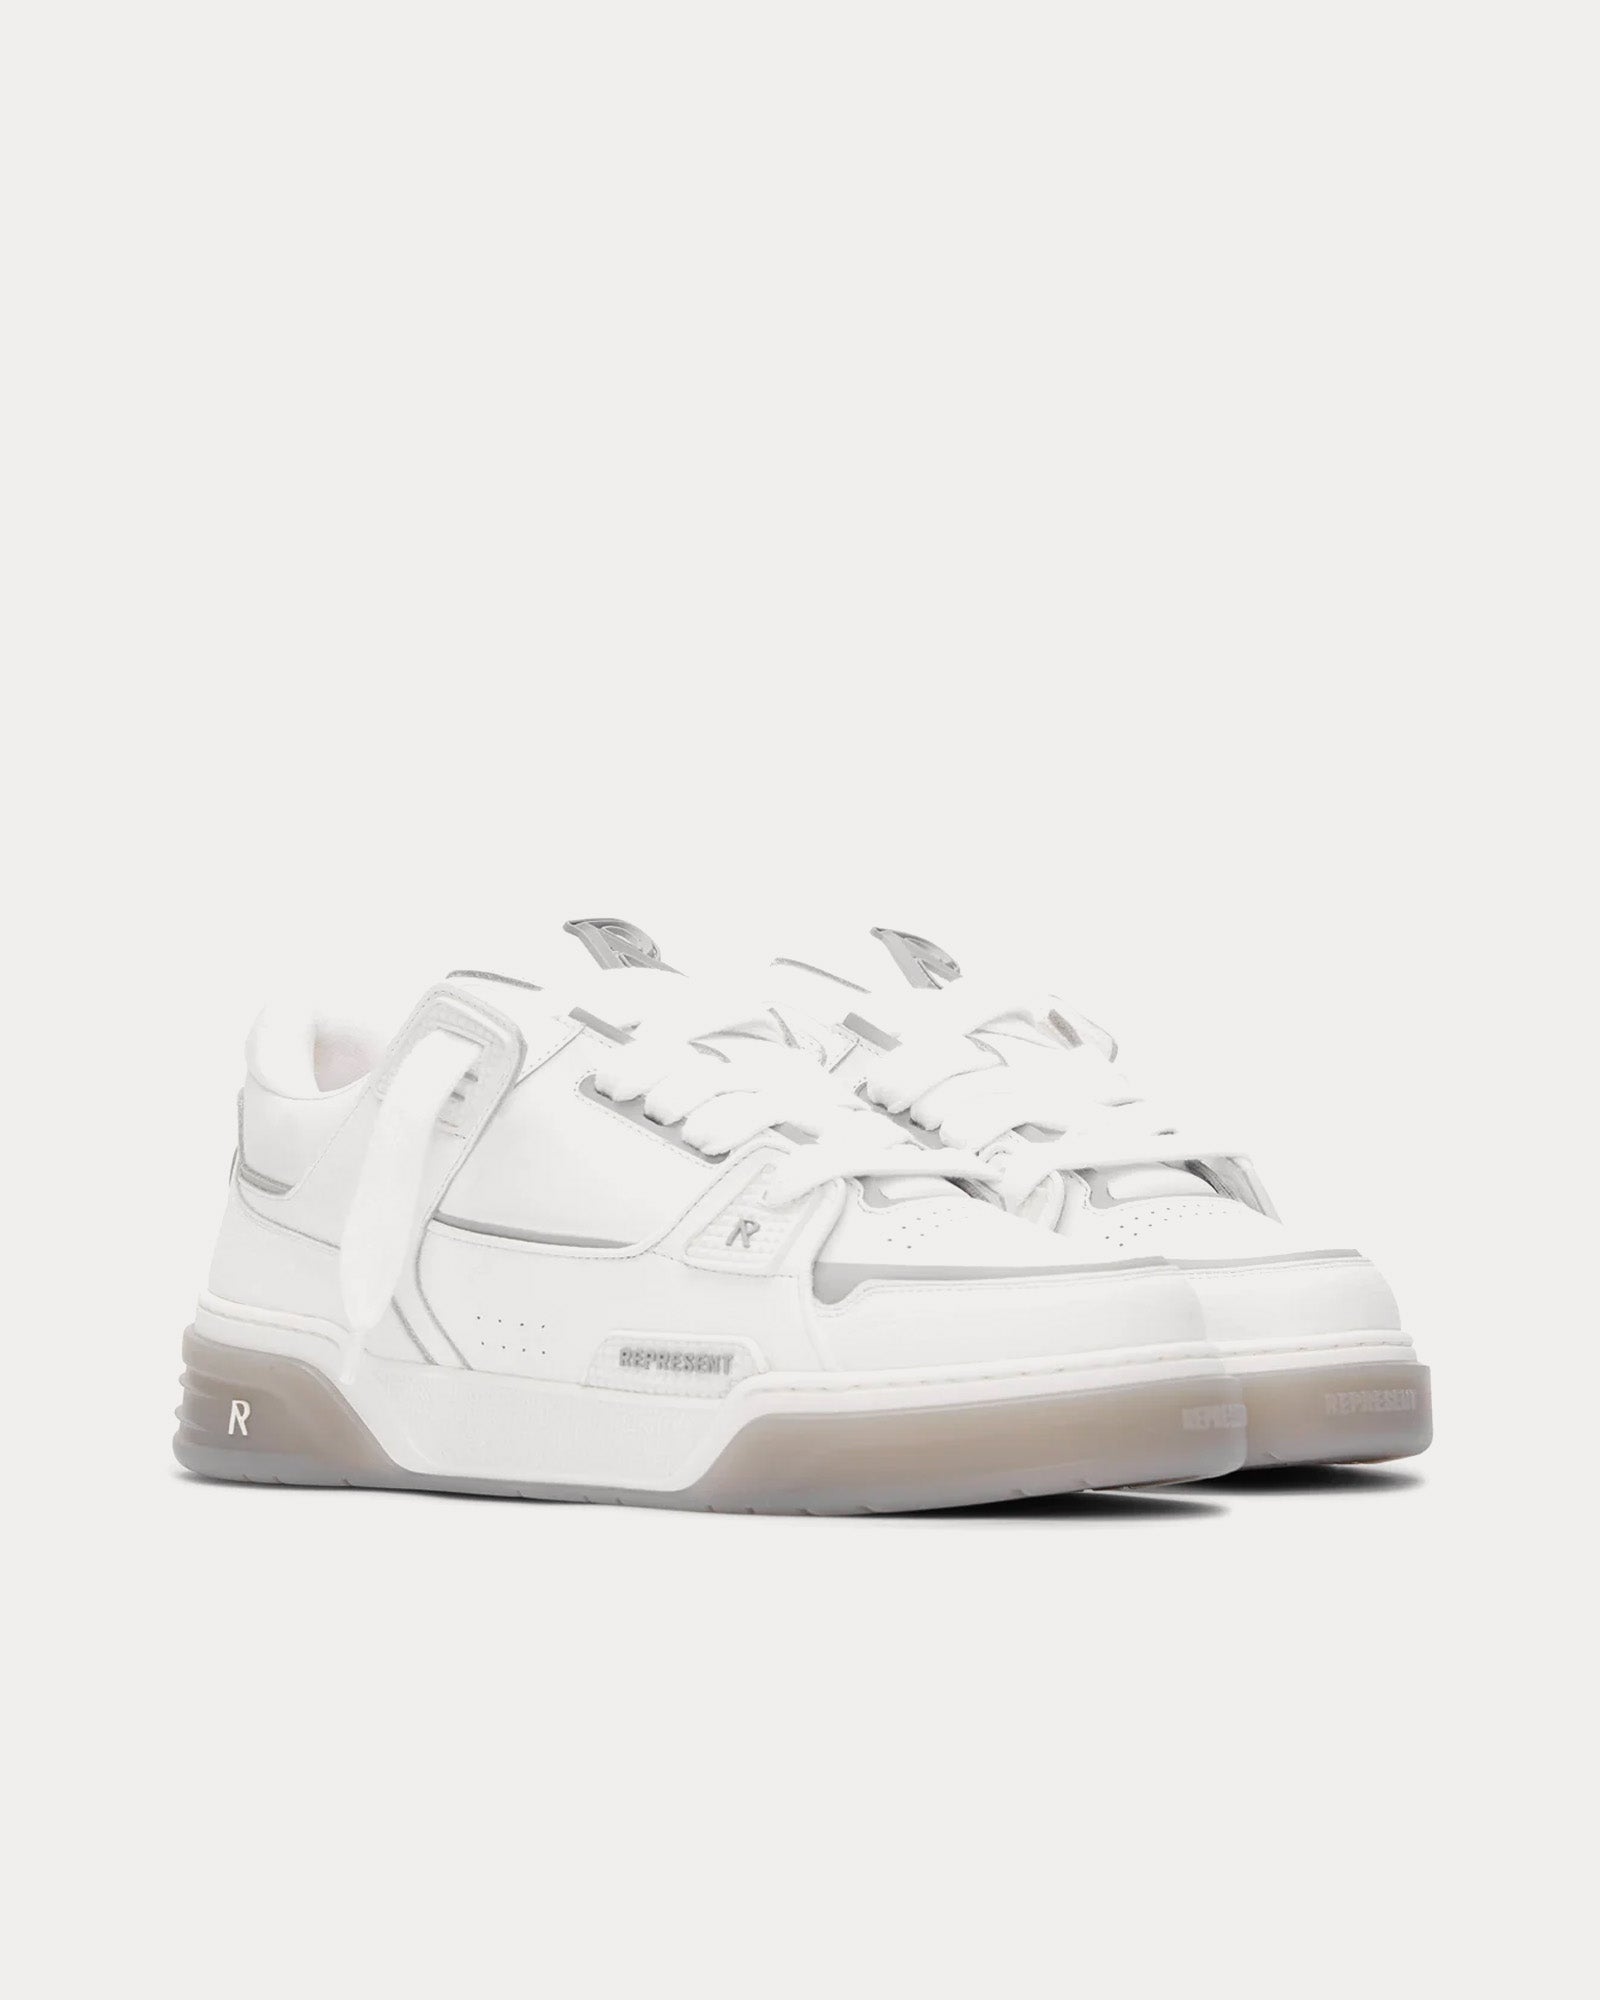 Represent - Studio Sneaker White / Grey Low Top Sneakers